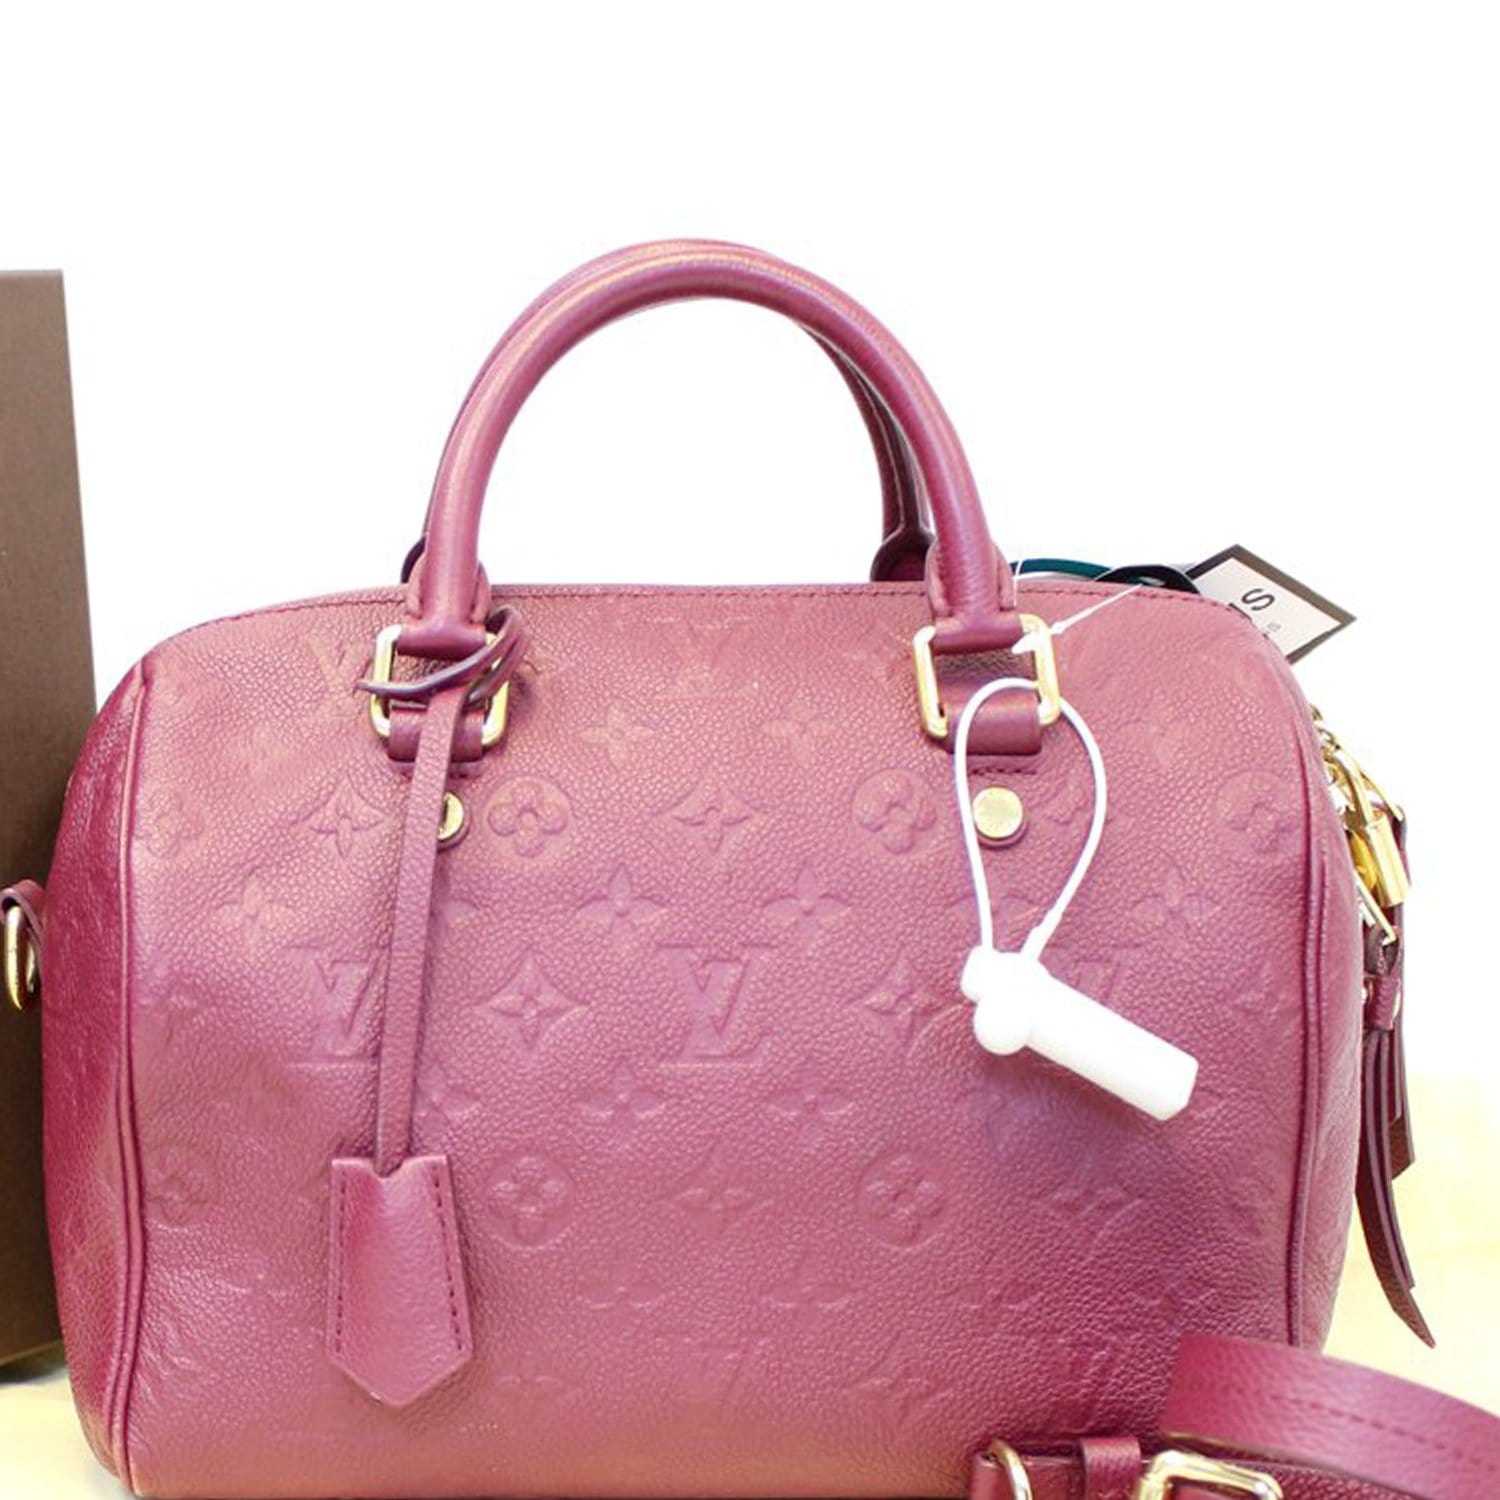 Louis Vuitton Speedy Bandouliere Bag Monogram Empreinte Leather 25 Pink